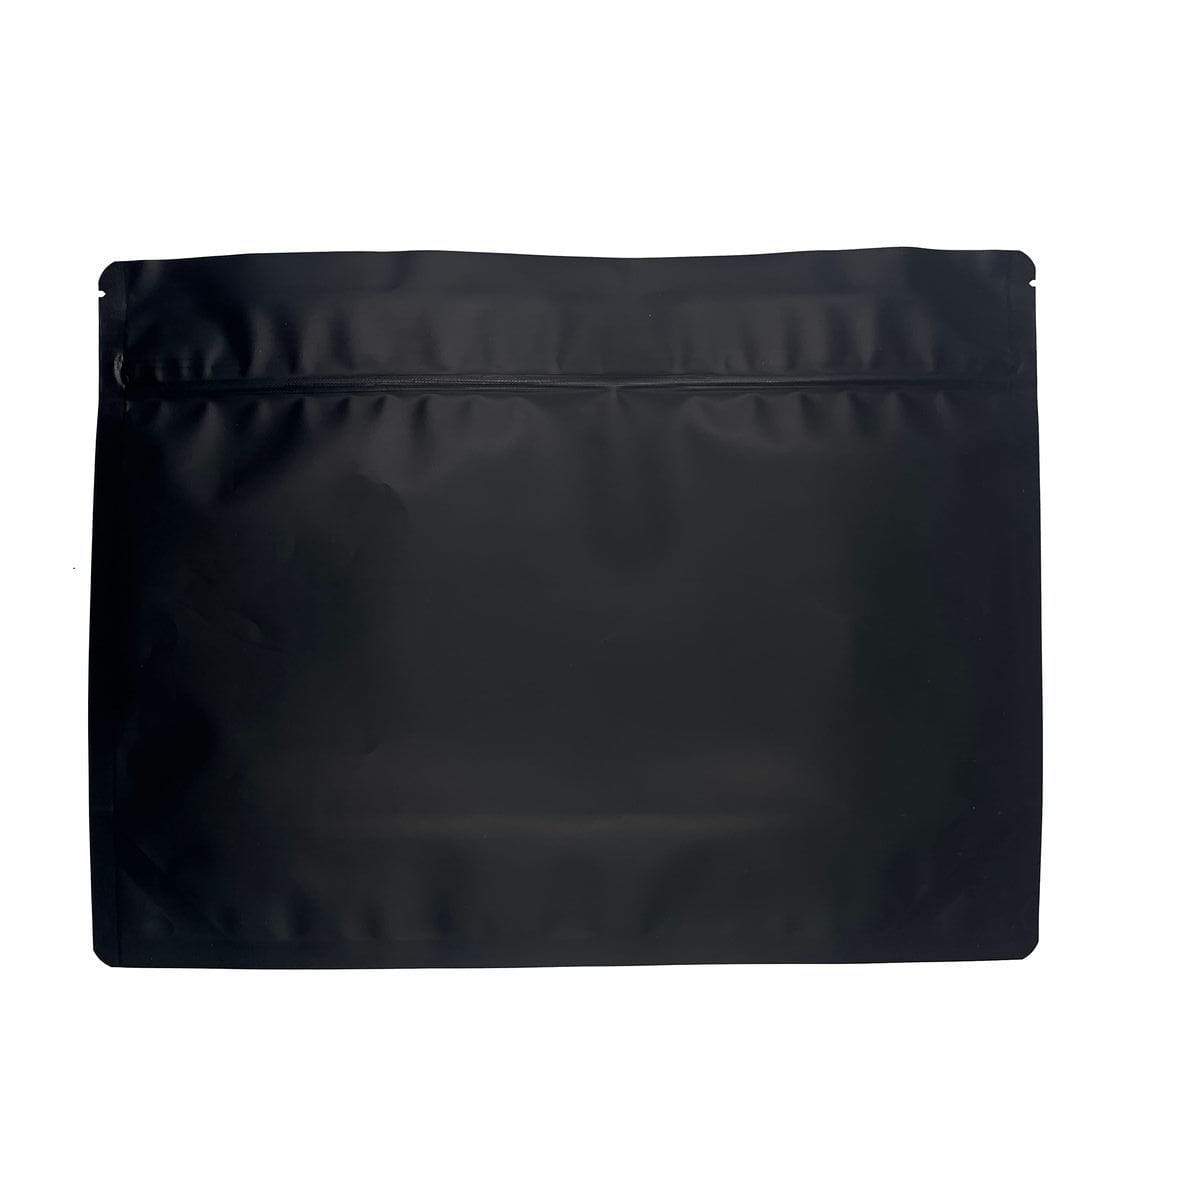 Bag King Large Child-Resistant Opaque Exit Bag (1/2 lb) 9.0" x 12.0"